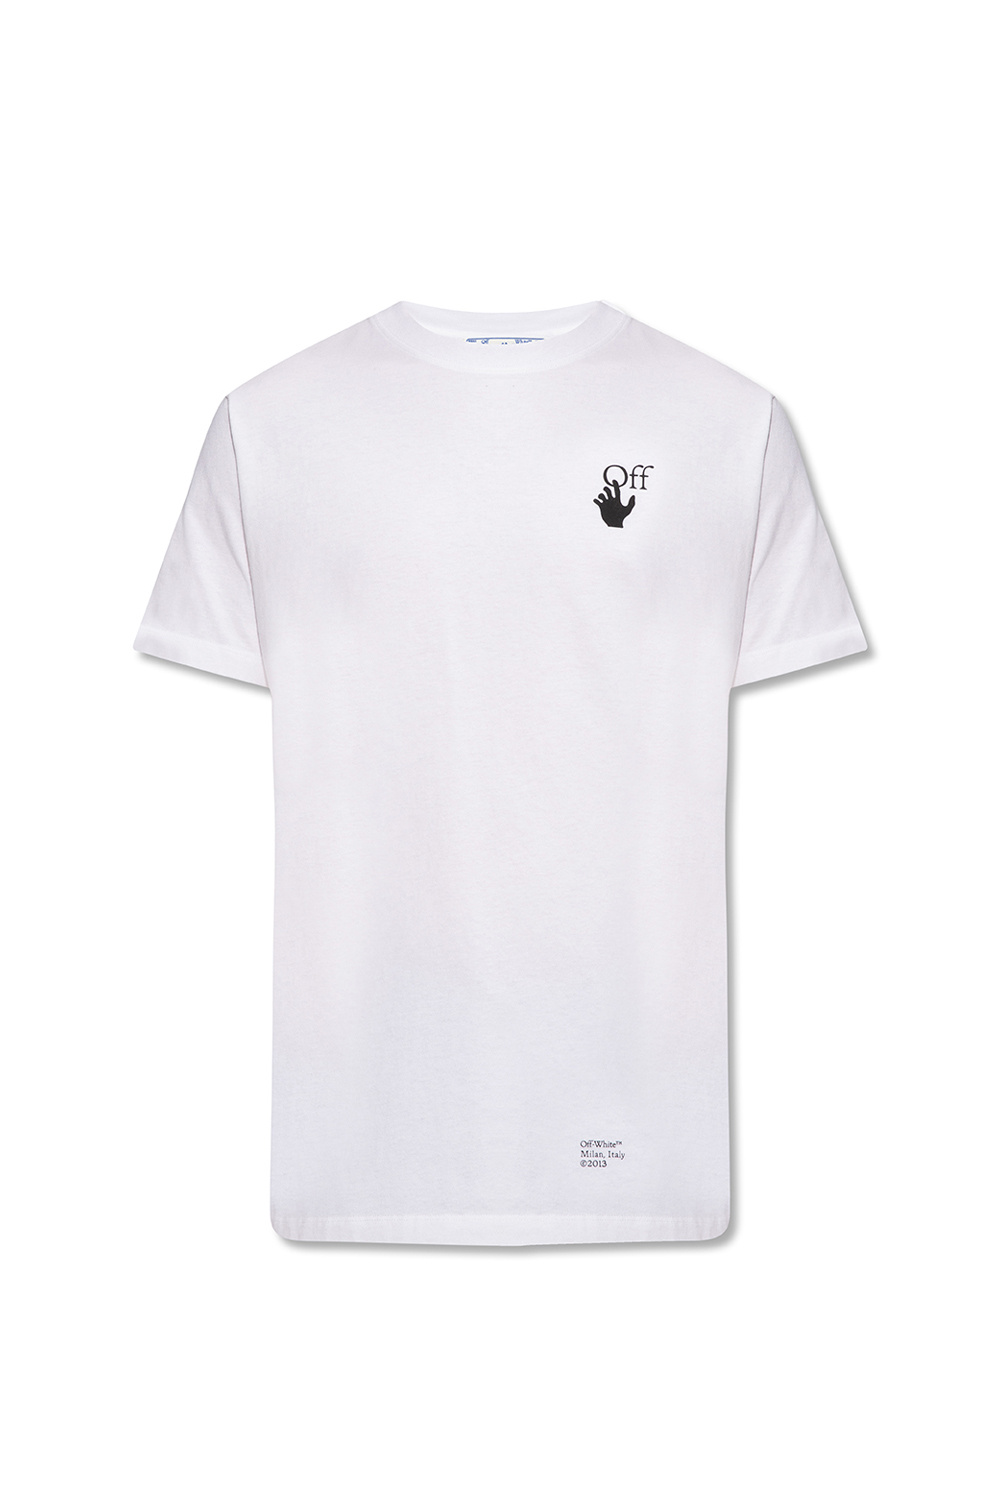 White T-shirt with logo Off-White - Vitkac Italy